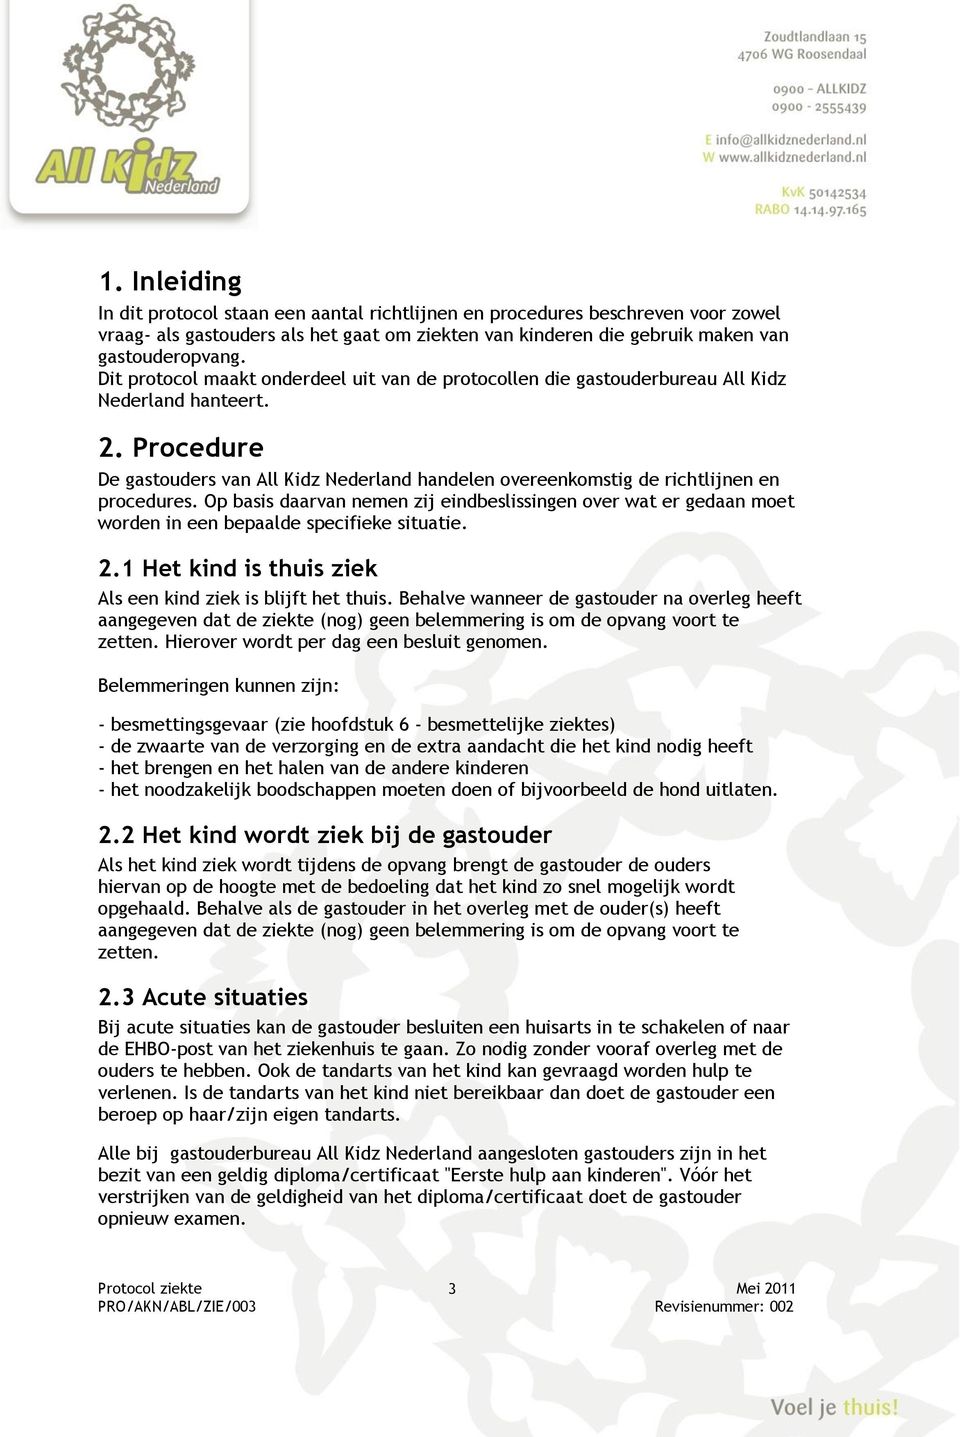 Procedure De gastouders van All Kidz Nederland handelen overeenkomstig de richtlijnen en procedures.